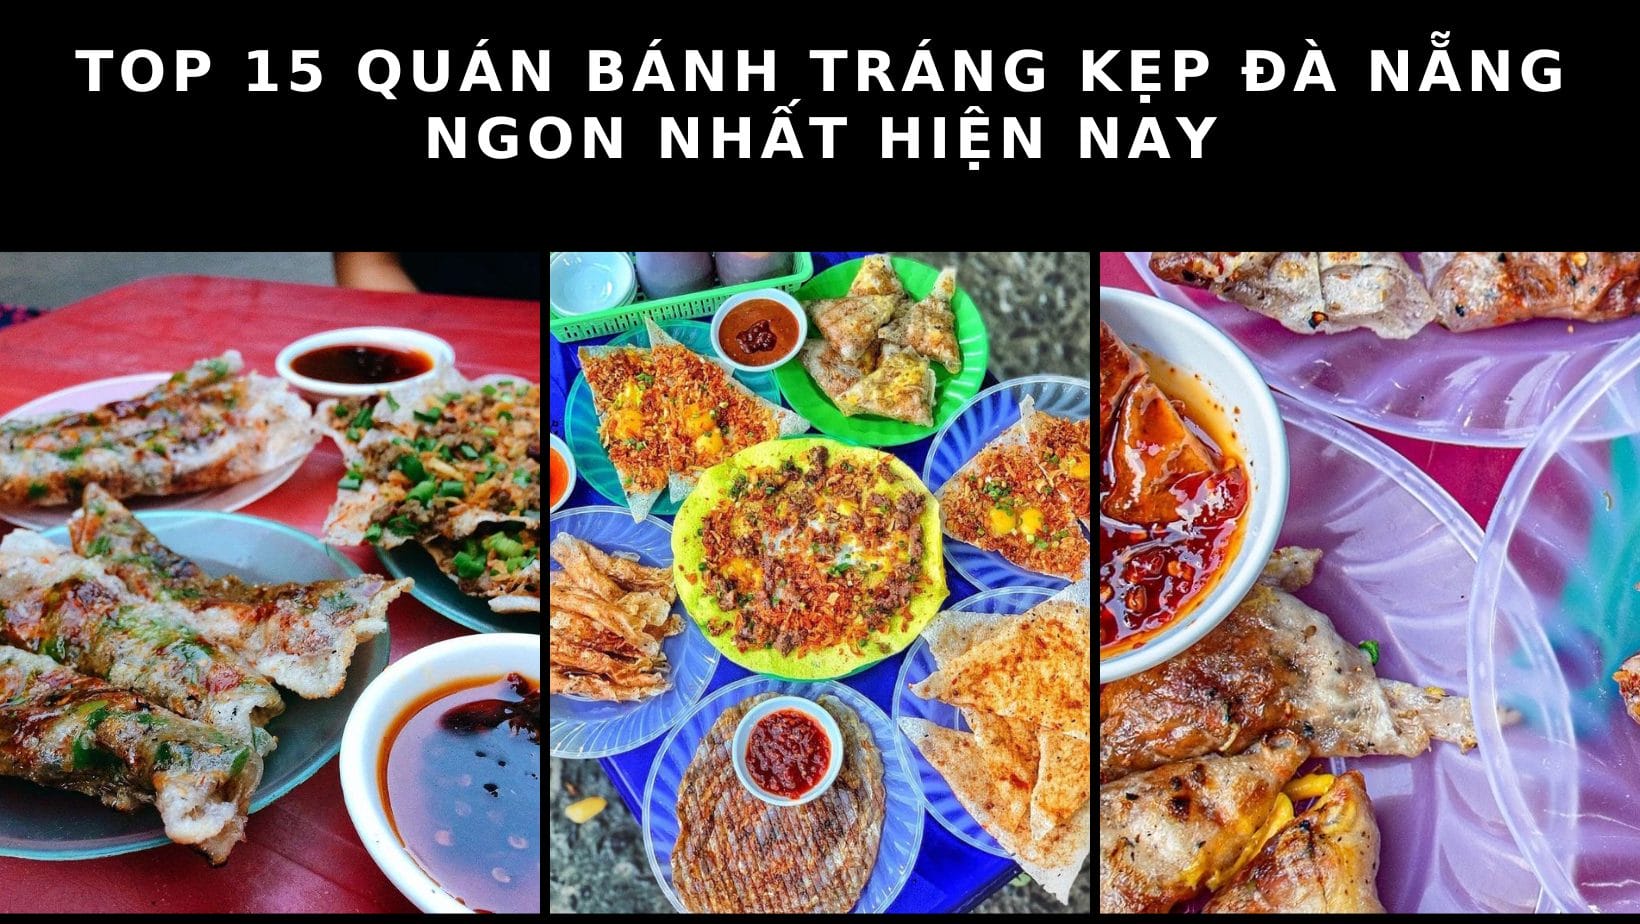 Top 15 quán bánh tráng kẹp Đà Nẵng ngon nhất hiện nay